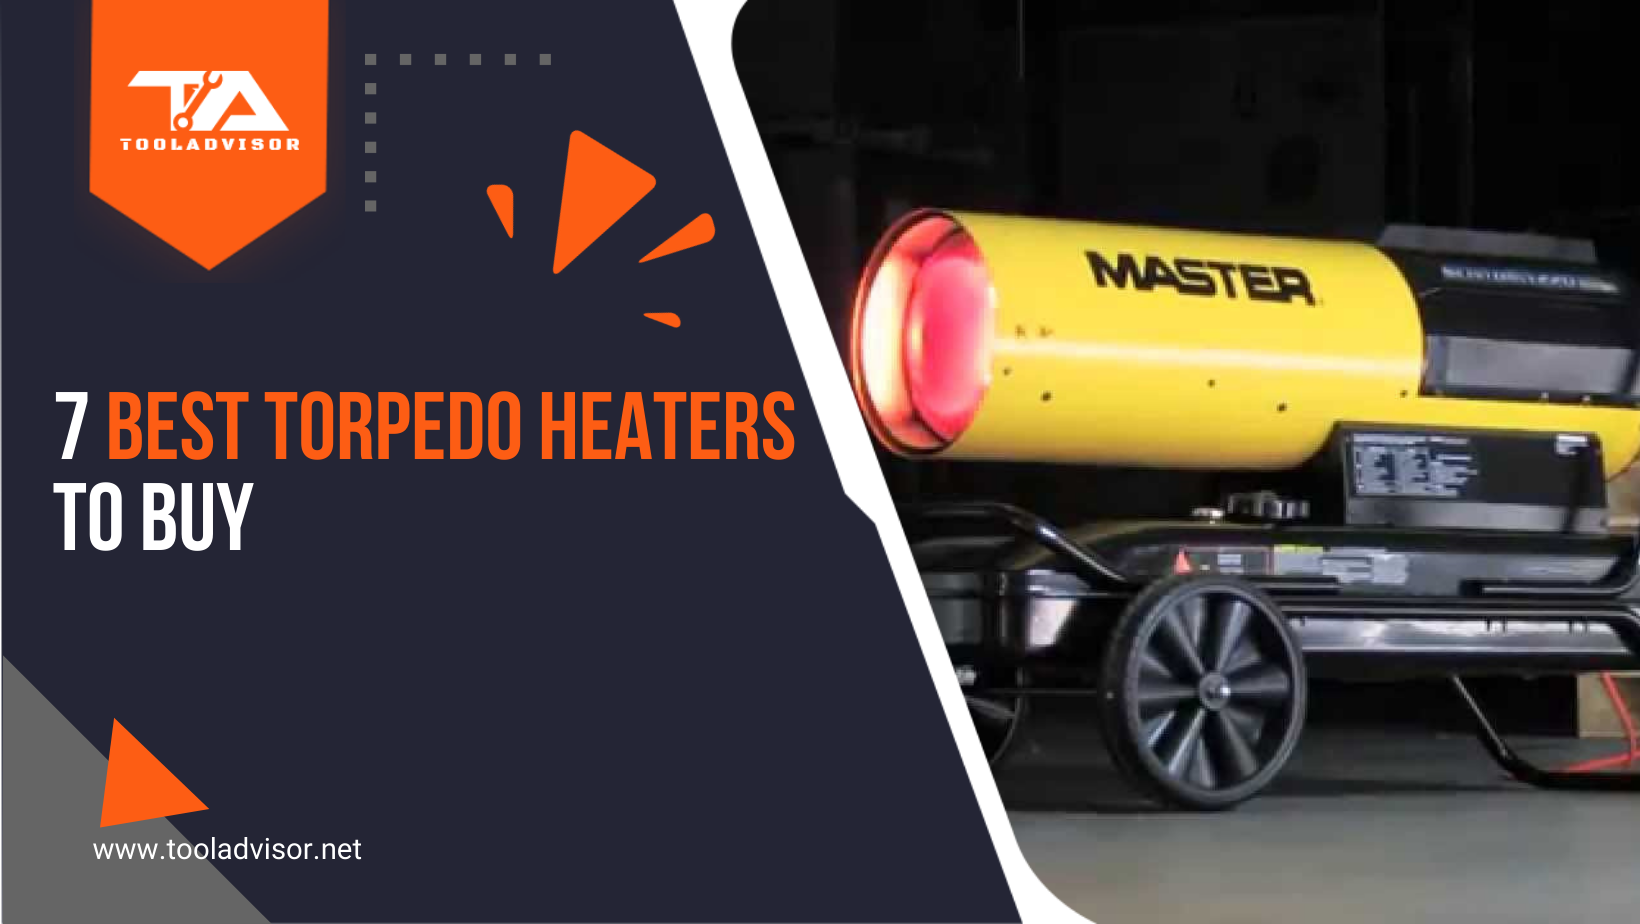 7 Best Torpedo Heaters to Buy in 2022